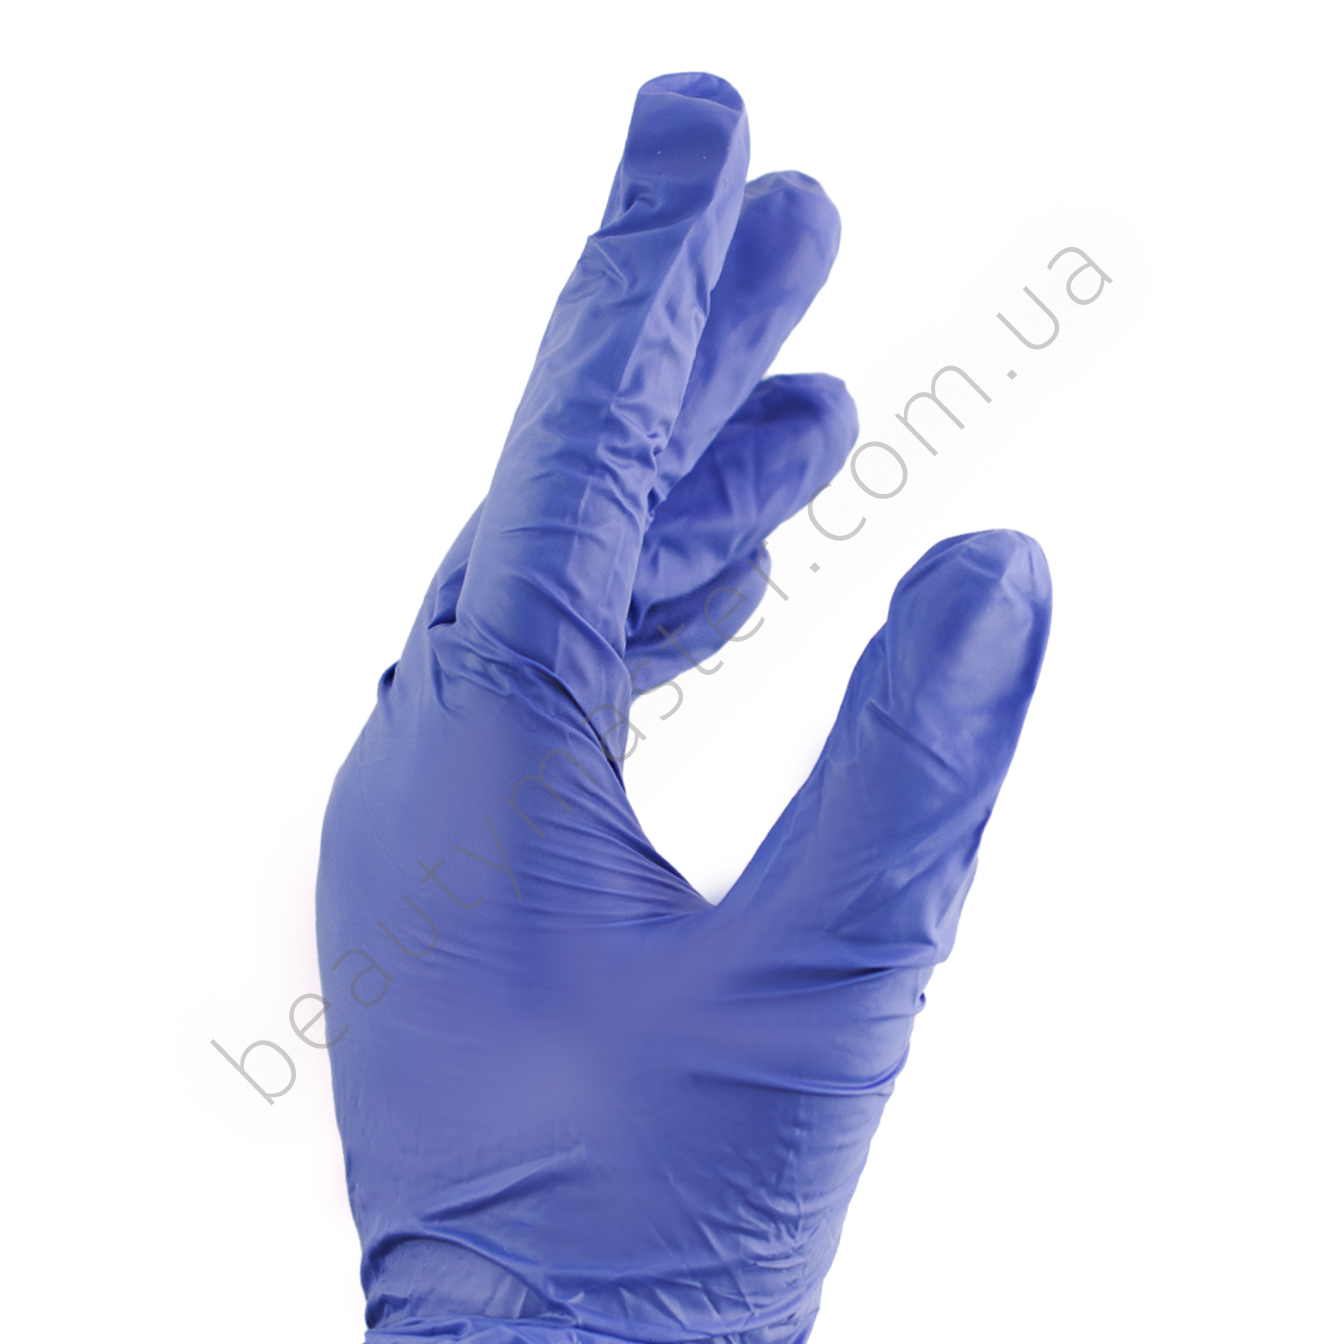 Gloves Vitril cobalt blue, size M, 1 pair